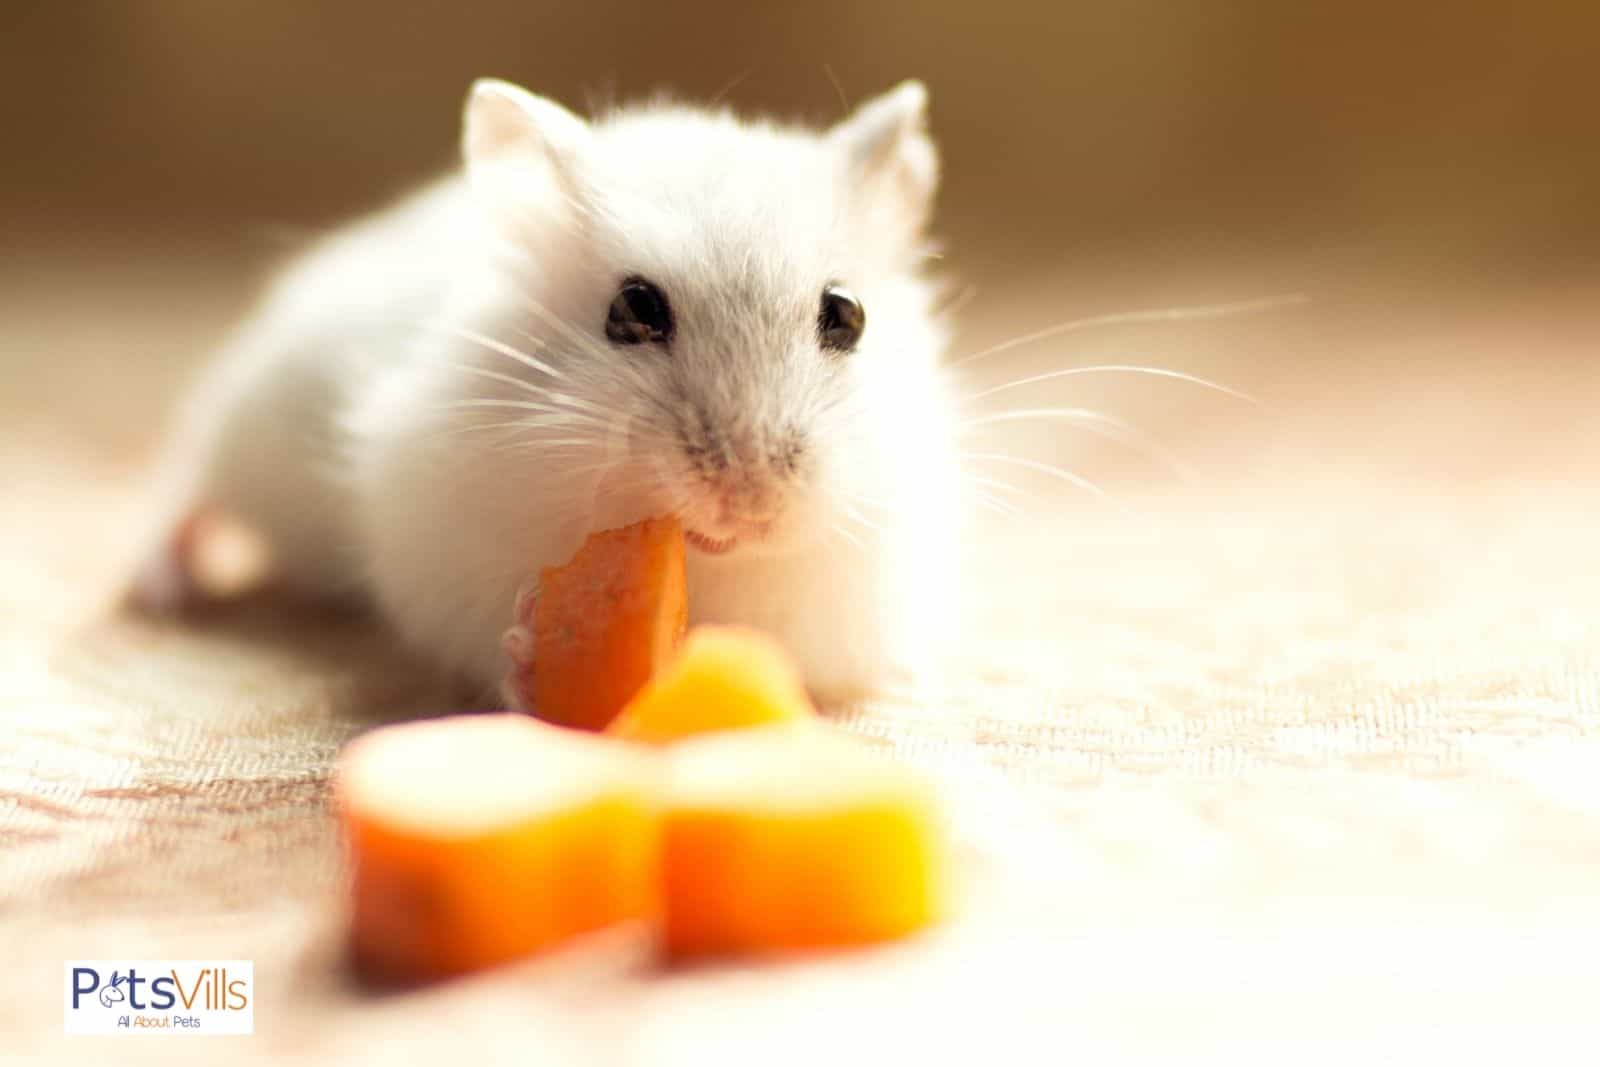 un hamster come zanahoria, ¿pueden los hamsters comer zanahorias?